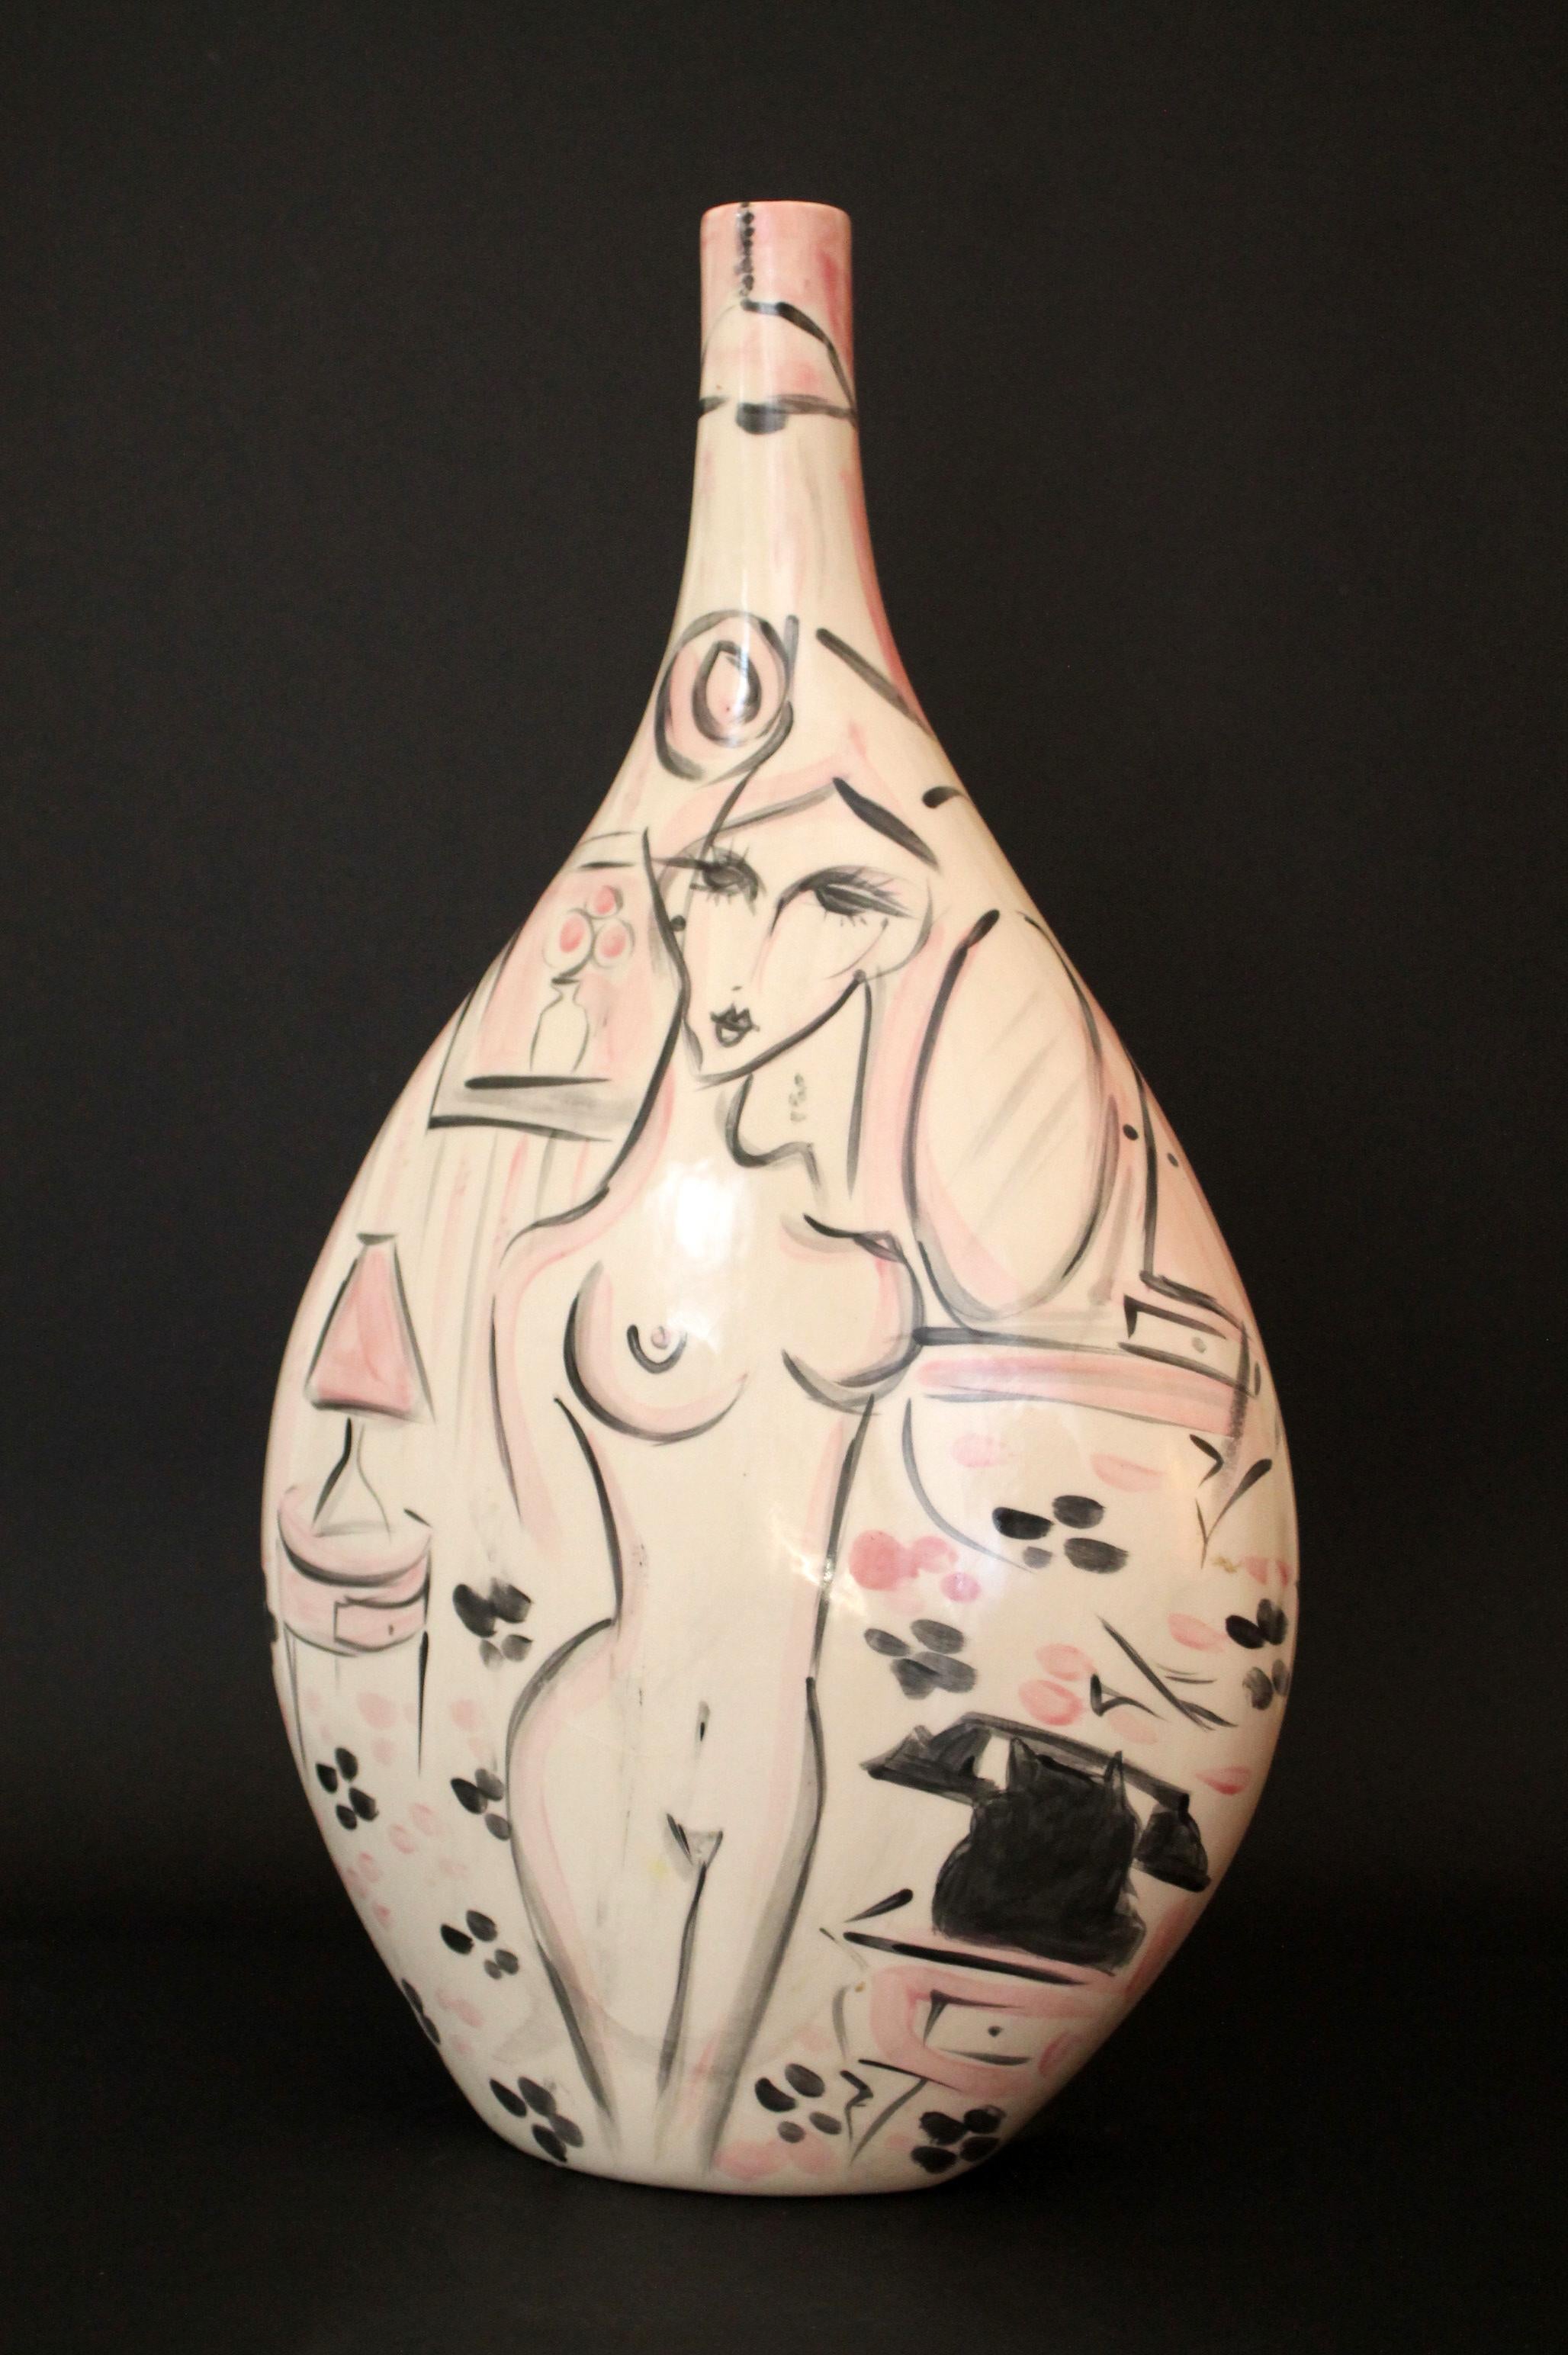 Vase moyen magnifique en céramique par le céramiste brésilien Cris Conde

Conçu par CRIS CONDE
Fabricant : Fabriqué et peint à la main par l'artiste (propre studio)
Technique : Pièce à double face (2 dispositions artistiques différentes) avec un cou